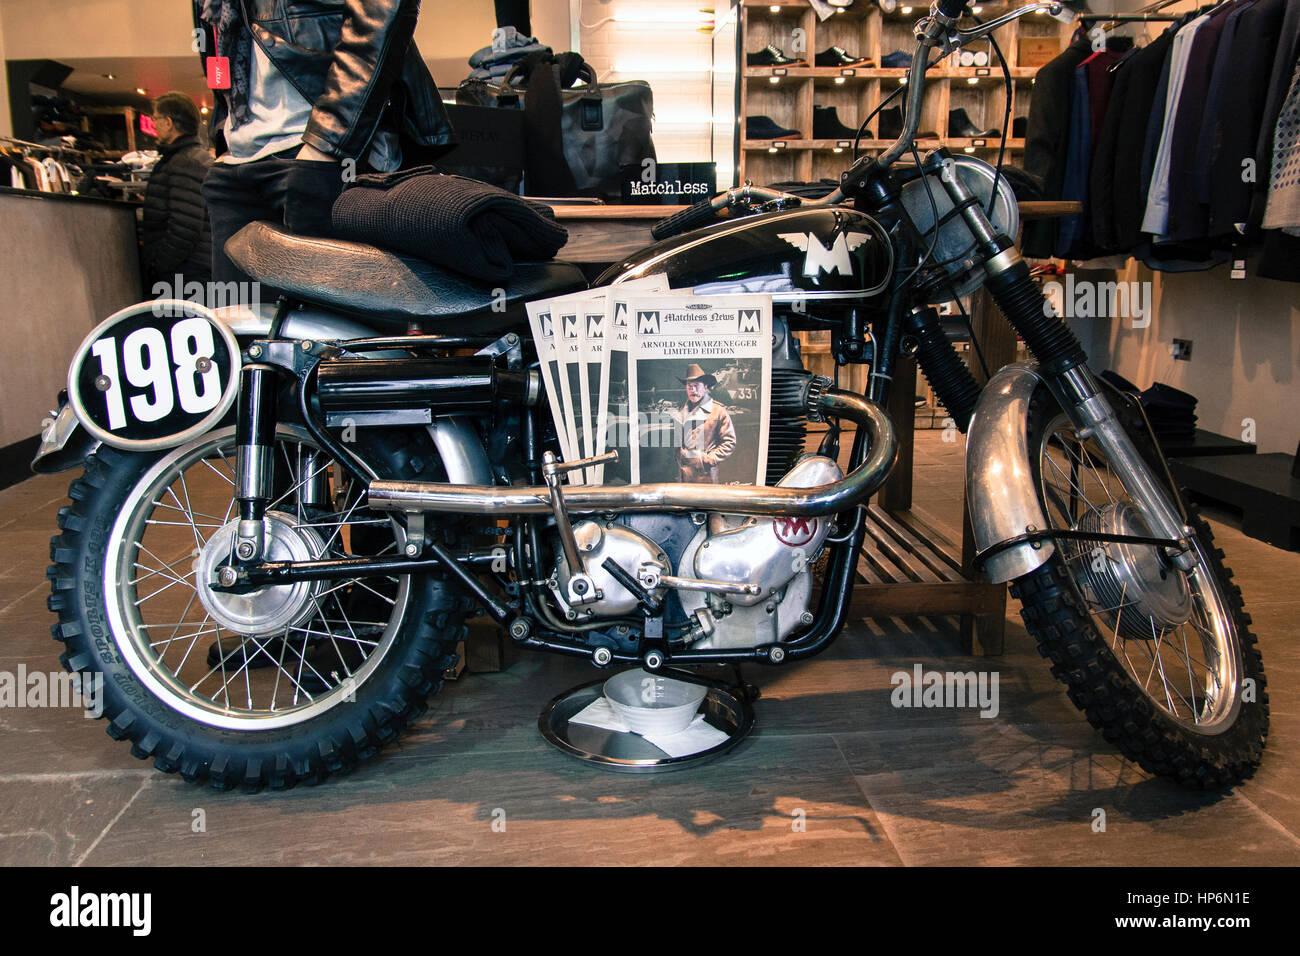 Inimitabile moto nel negozio Display Foto Stock